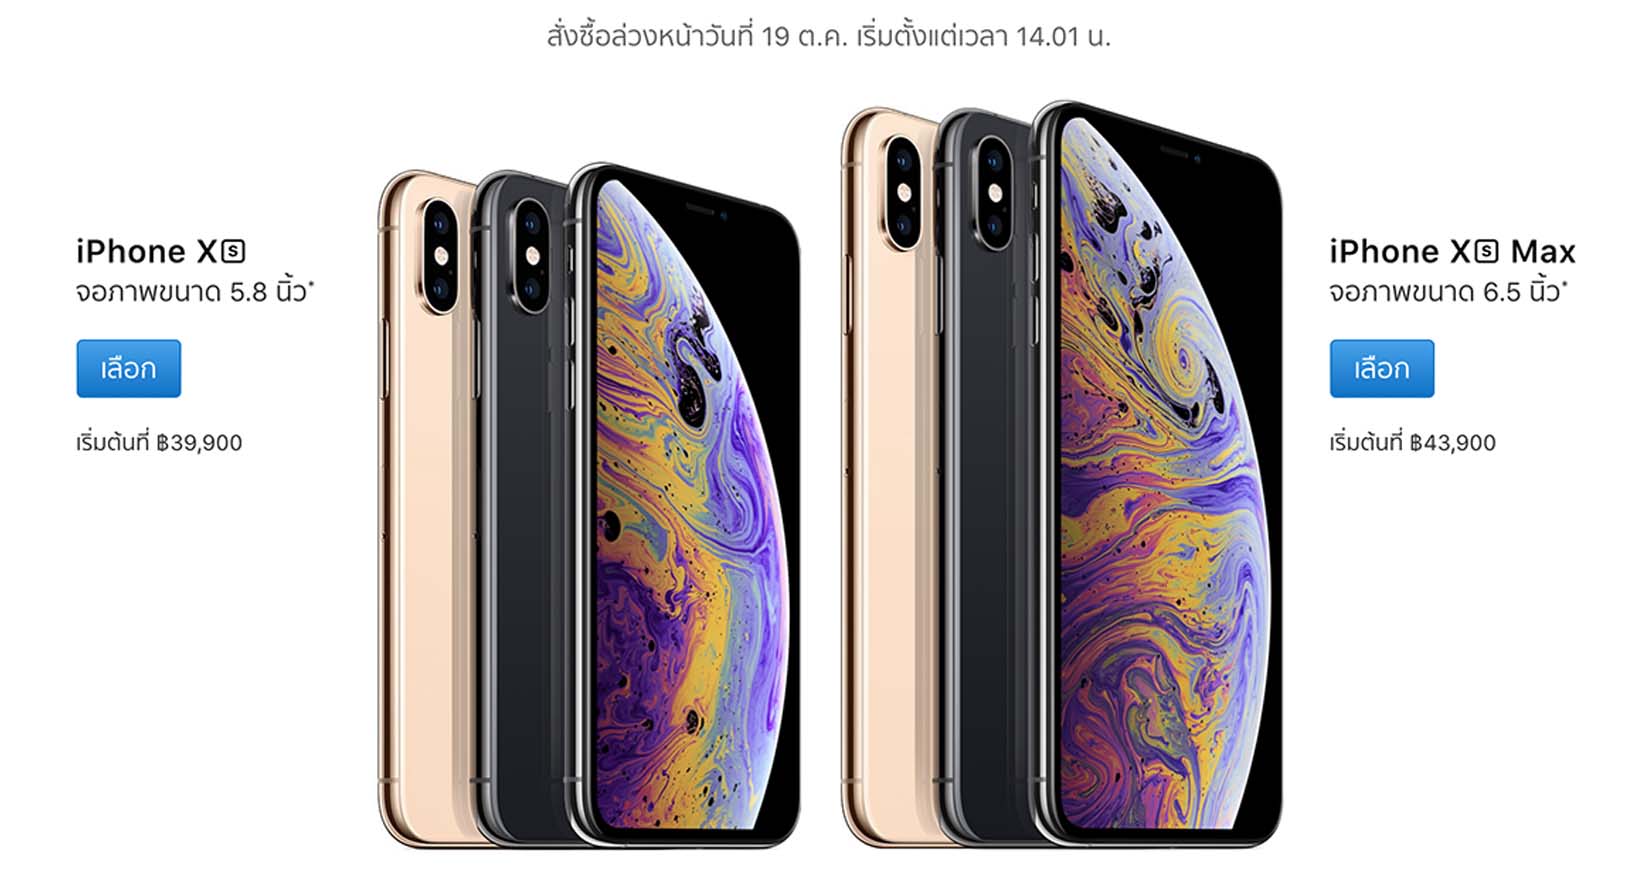 ราคาวางจำหน่าย iPhone xs และ iPhone XS Max วันเปิดขายในประเทศไทย